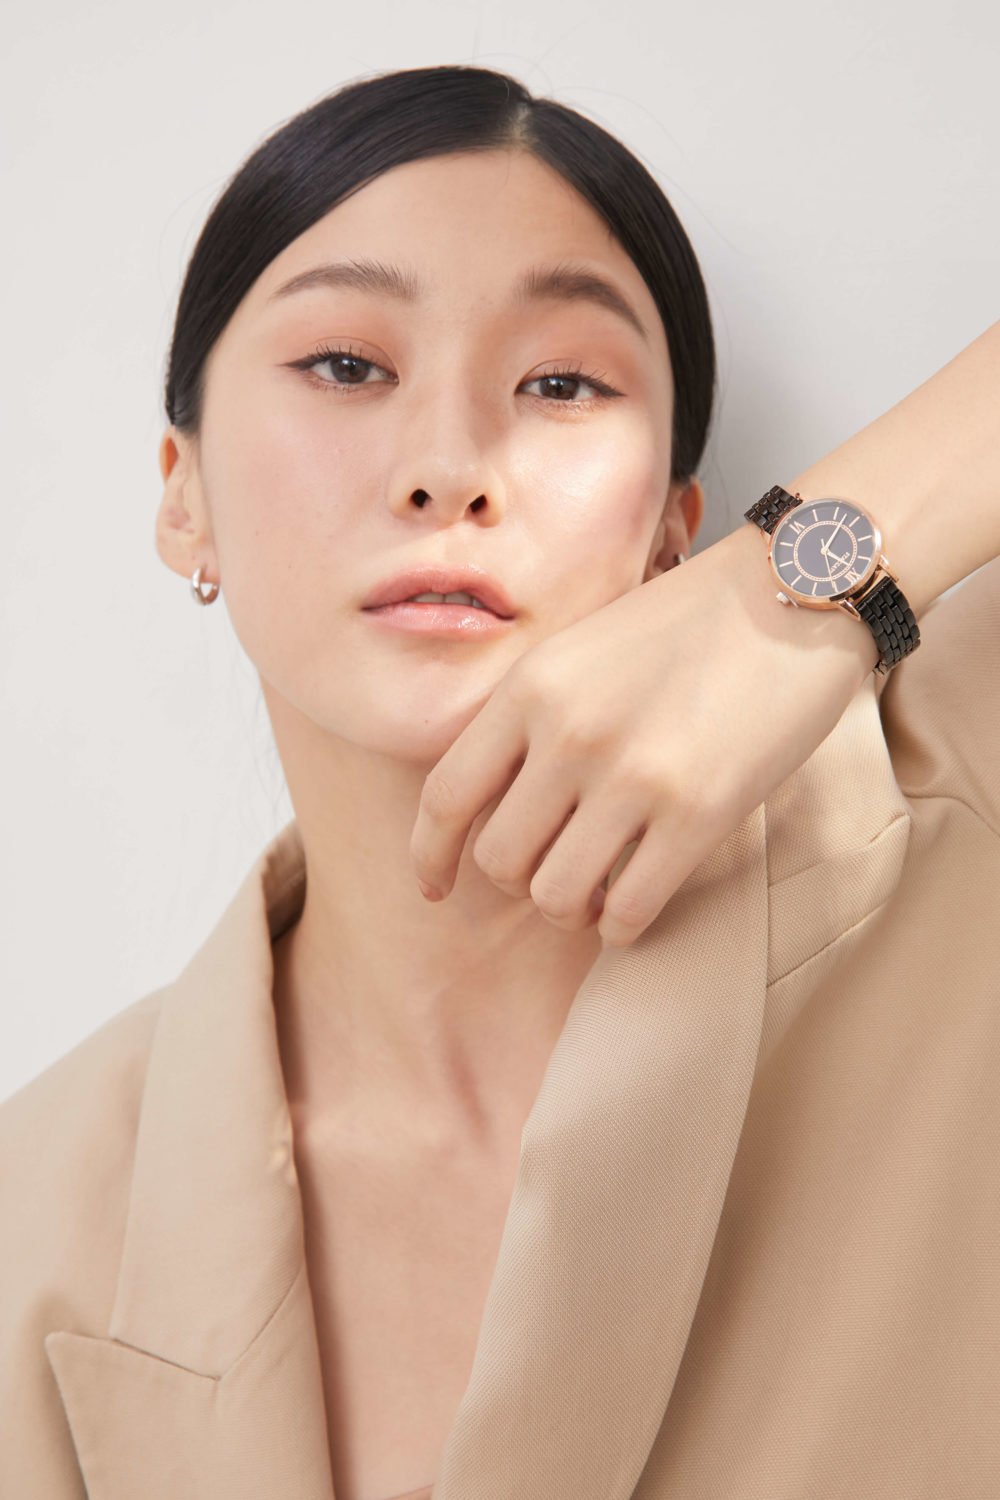 氣質手錶,簡約手錶,玫瑰金手錶,圓形手錶,流行手錶,流行飾品,韓國品牌手錶,STACCATO,韓國飾品,eco安珂飾品